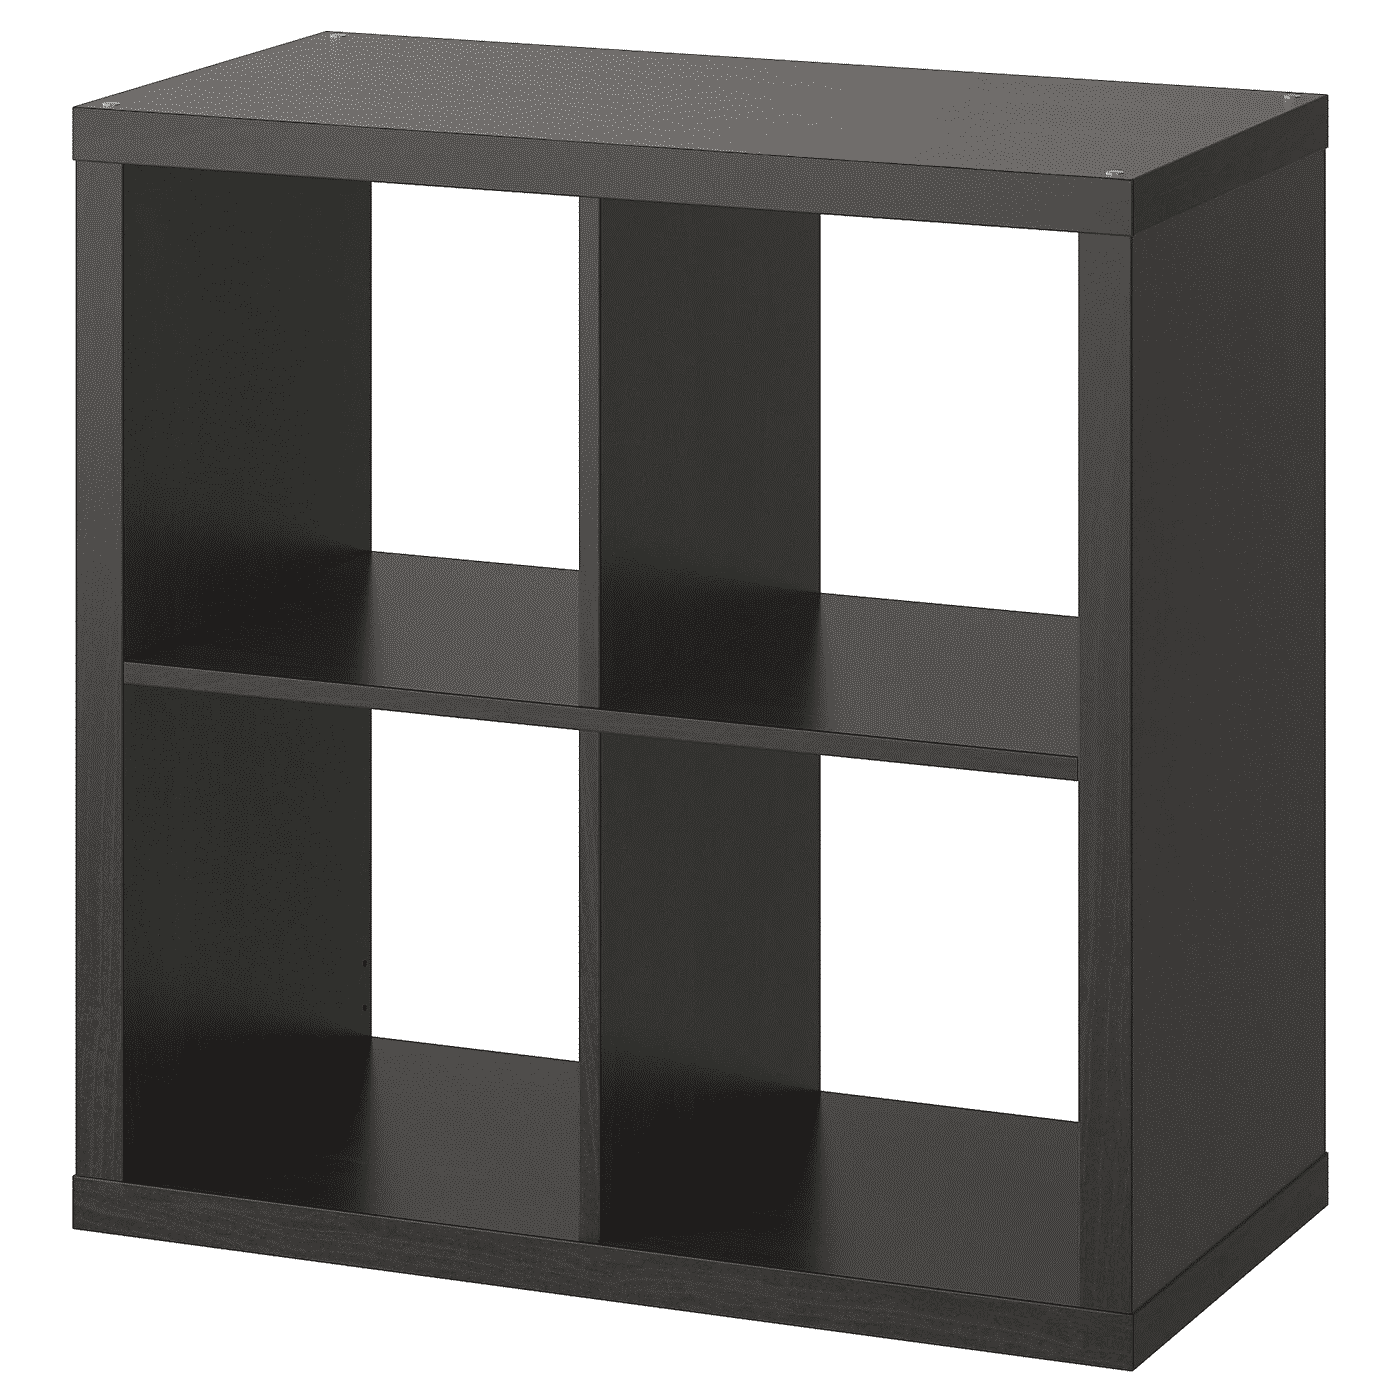 KALLAX Shelf unit, black-brown, 30 3 8x30 3 8